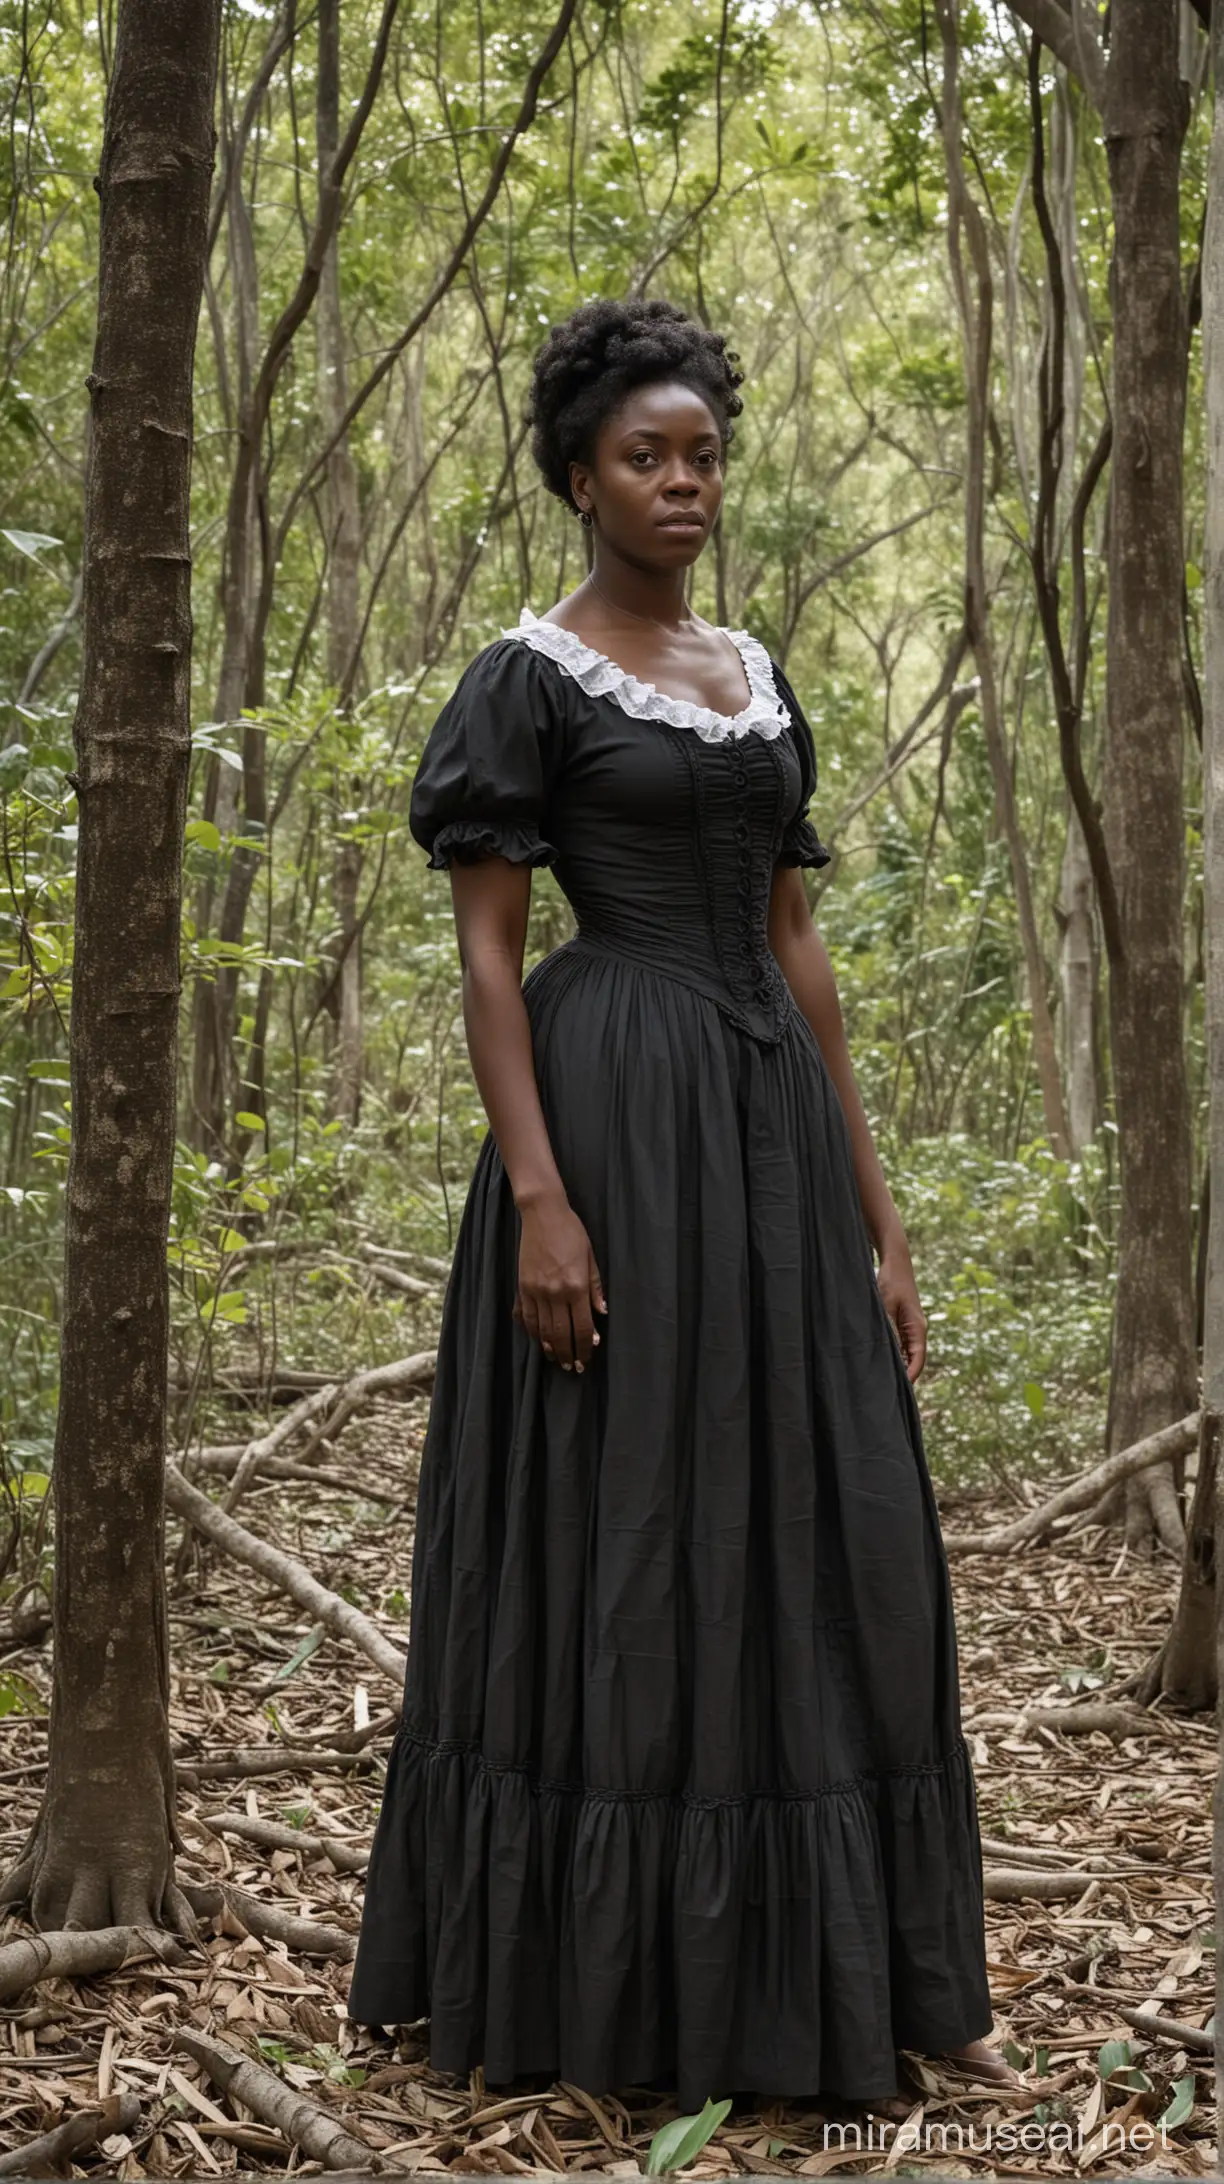 Black Woman in 1800s Cartagena Woods